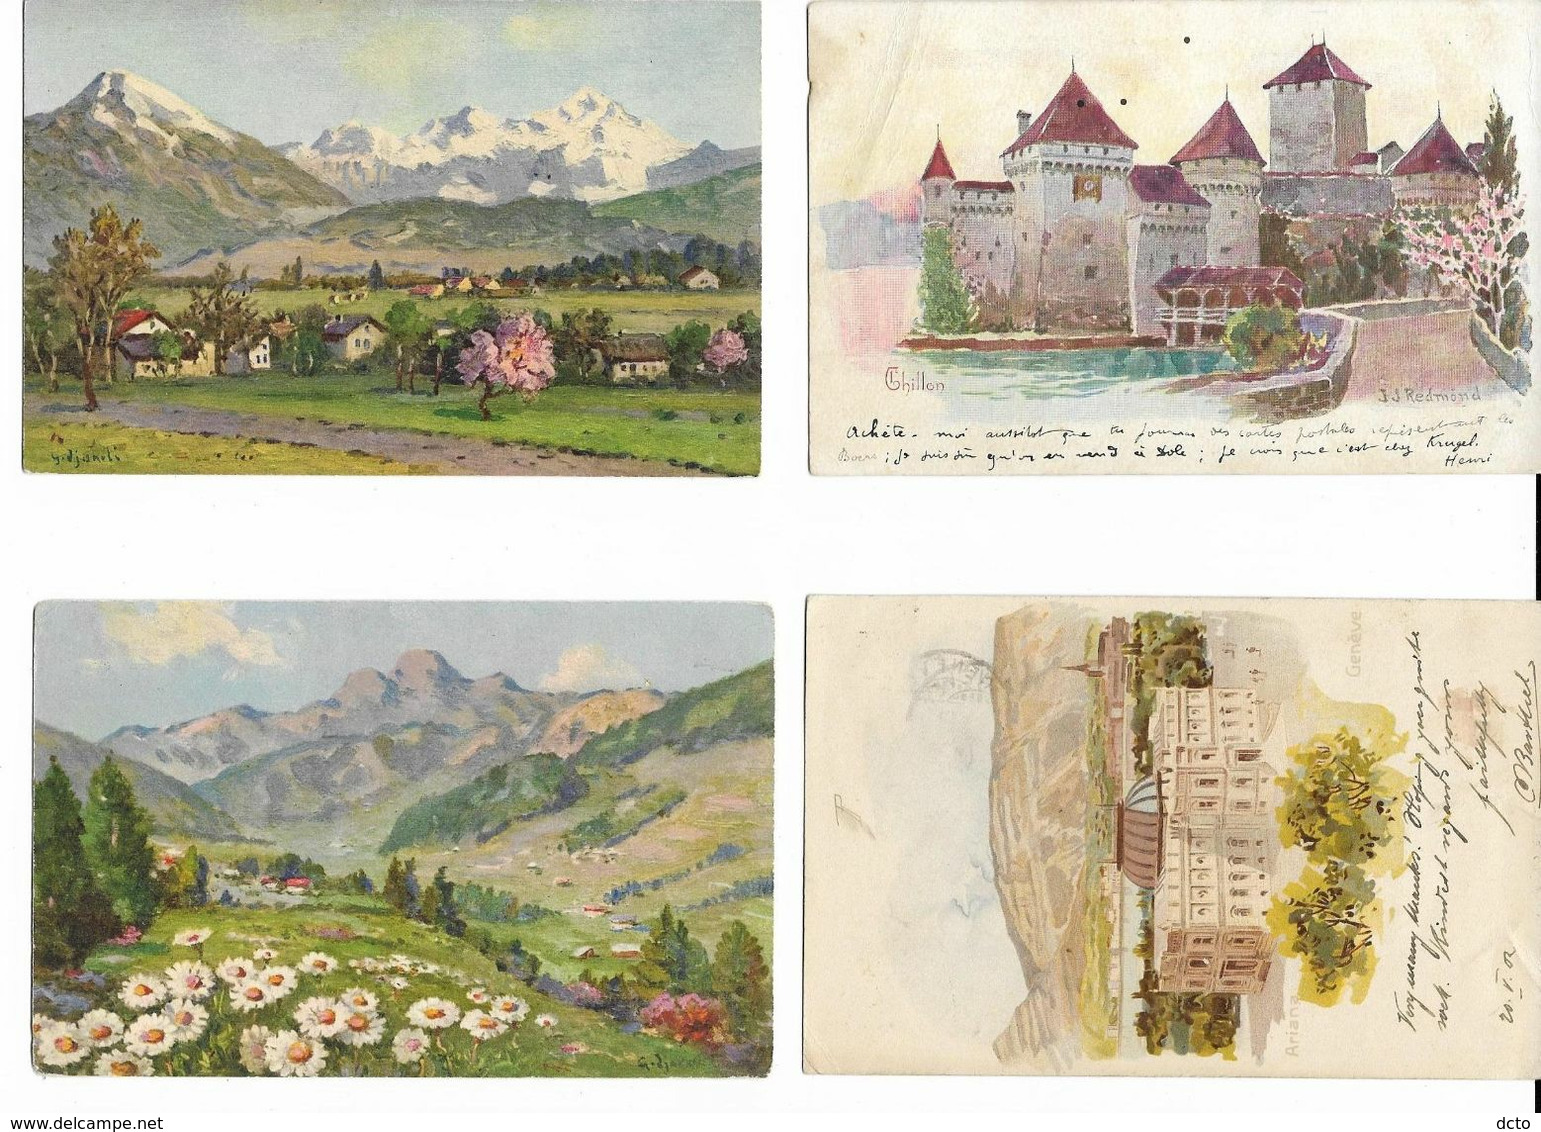 9 cpa peintures= 8 paysages suisses + 1 Lugano. Buchser, Pilatus, Megève,Kublis,Filisur, Chillon